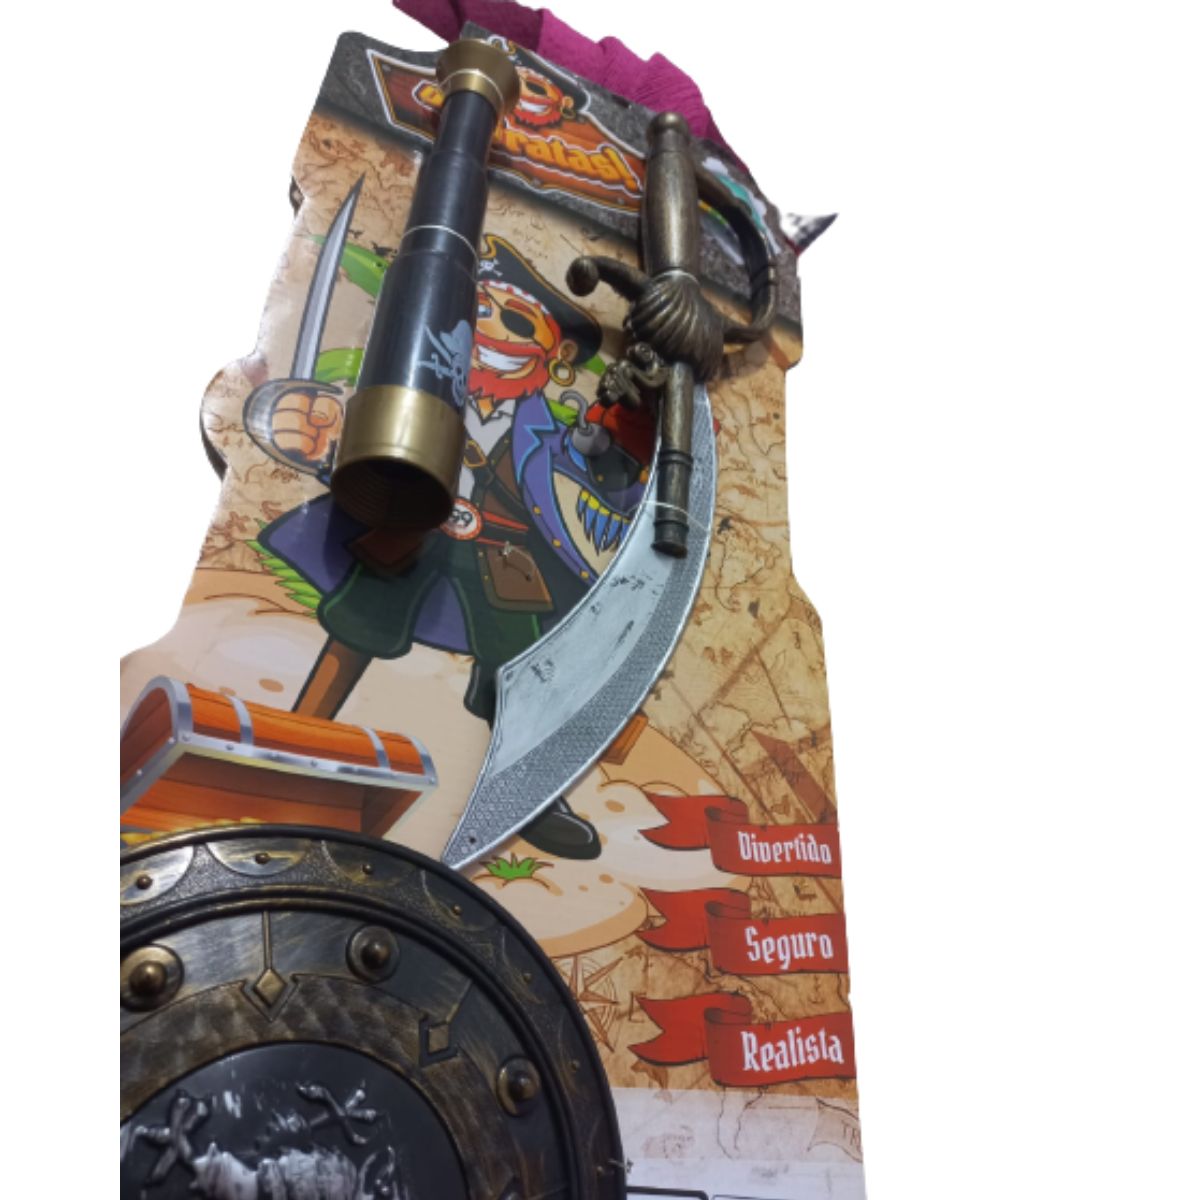 Kit Brinquedo 2 Pistola Pirata Fantasia Cosplay e Decoração - Pedagógica -  Papelaria, Livraria, Artesanato, Festa e Fantasia